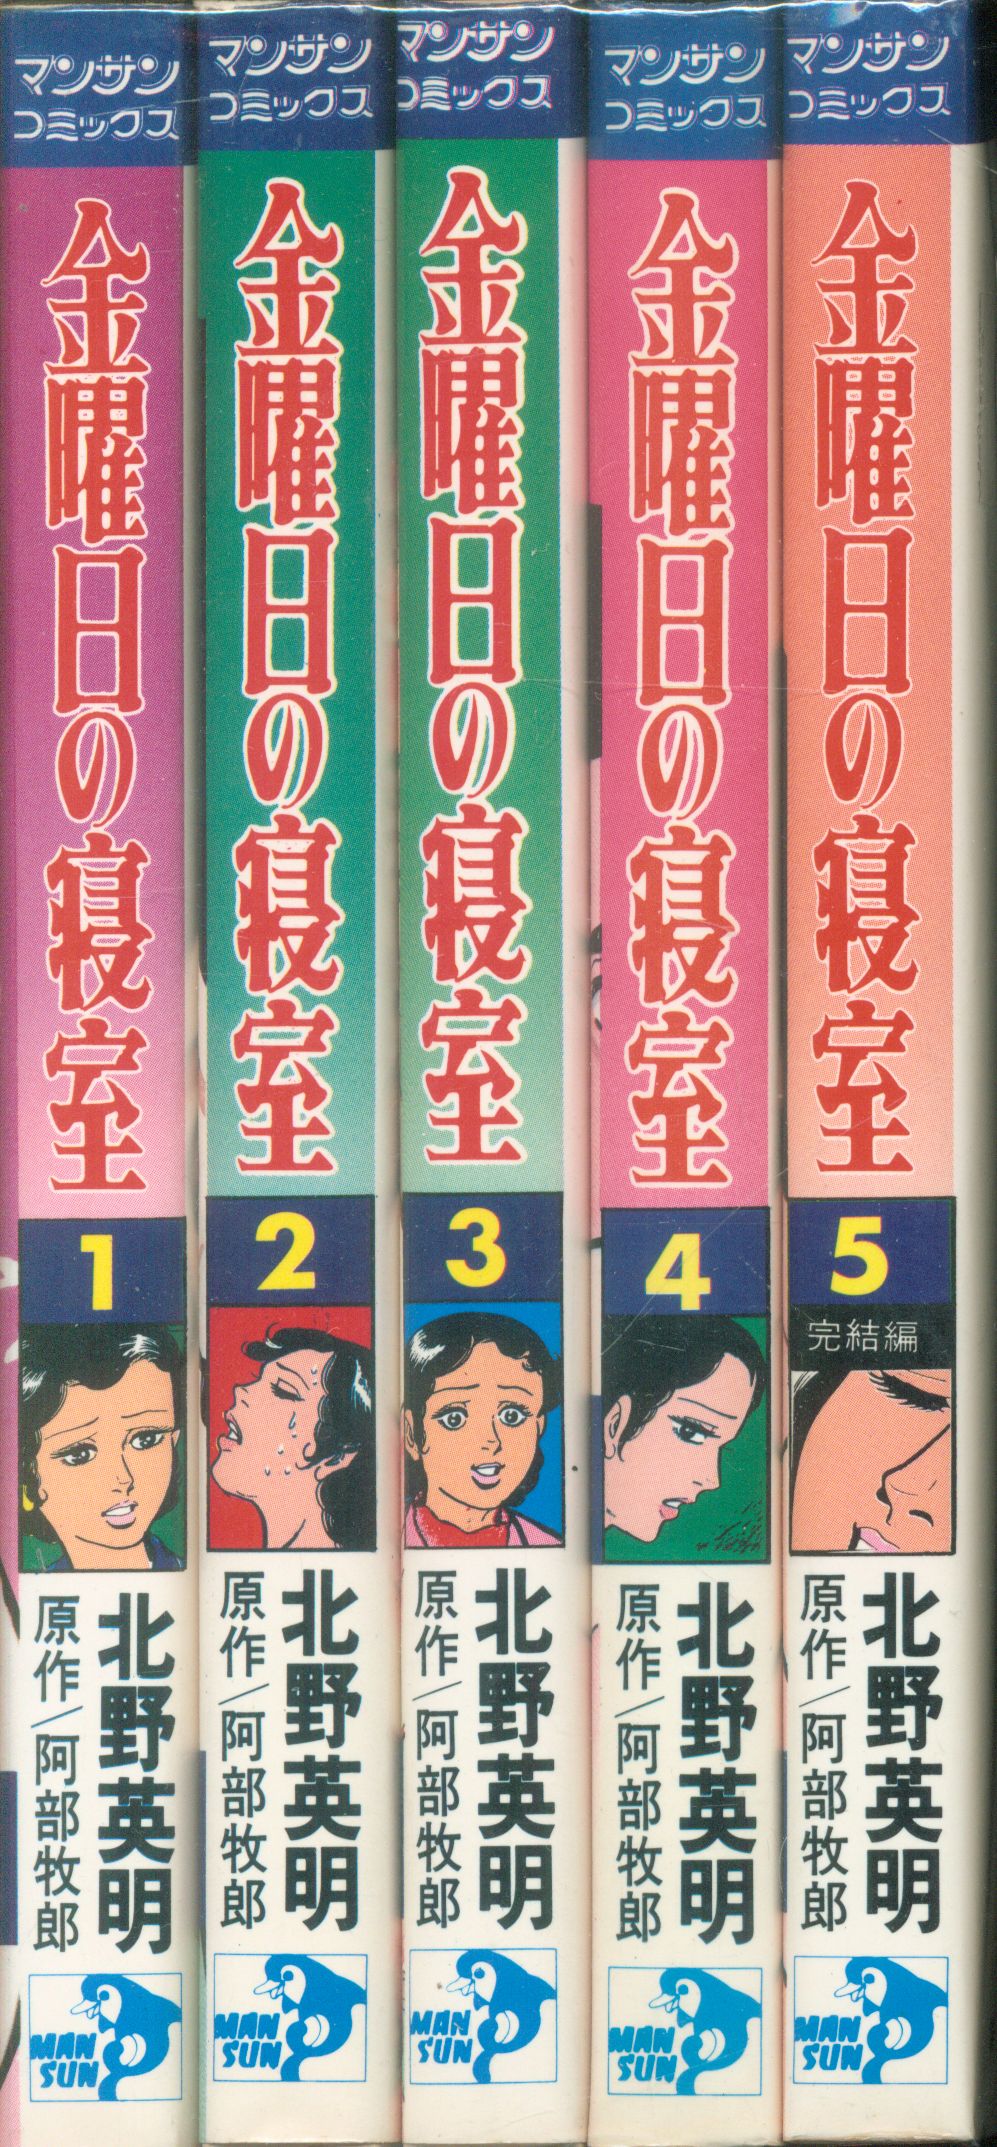 金曜日の寝室 3 北野英明 ヤケシミ有 1981年7月30日 発行 - 漫画、コミック